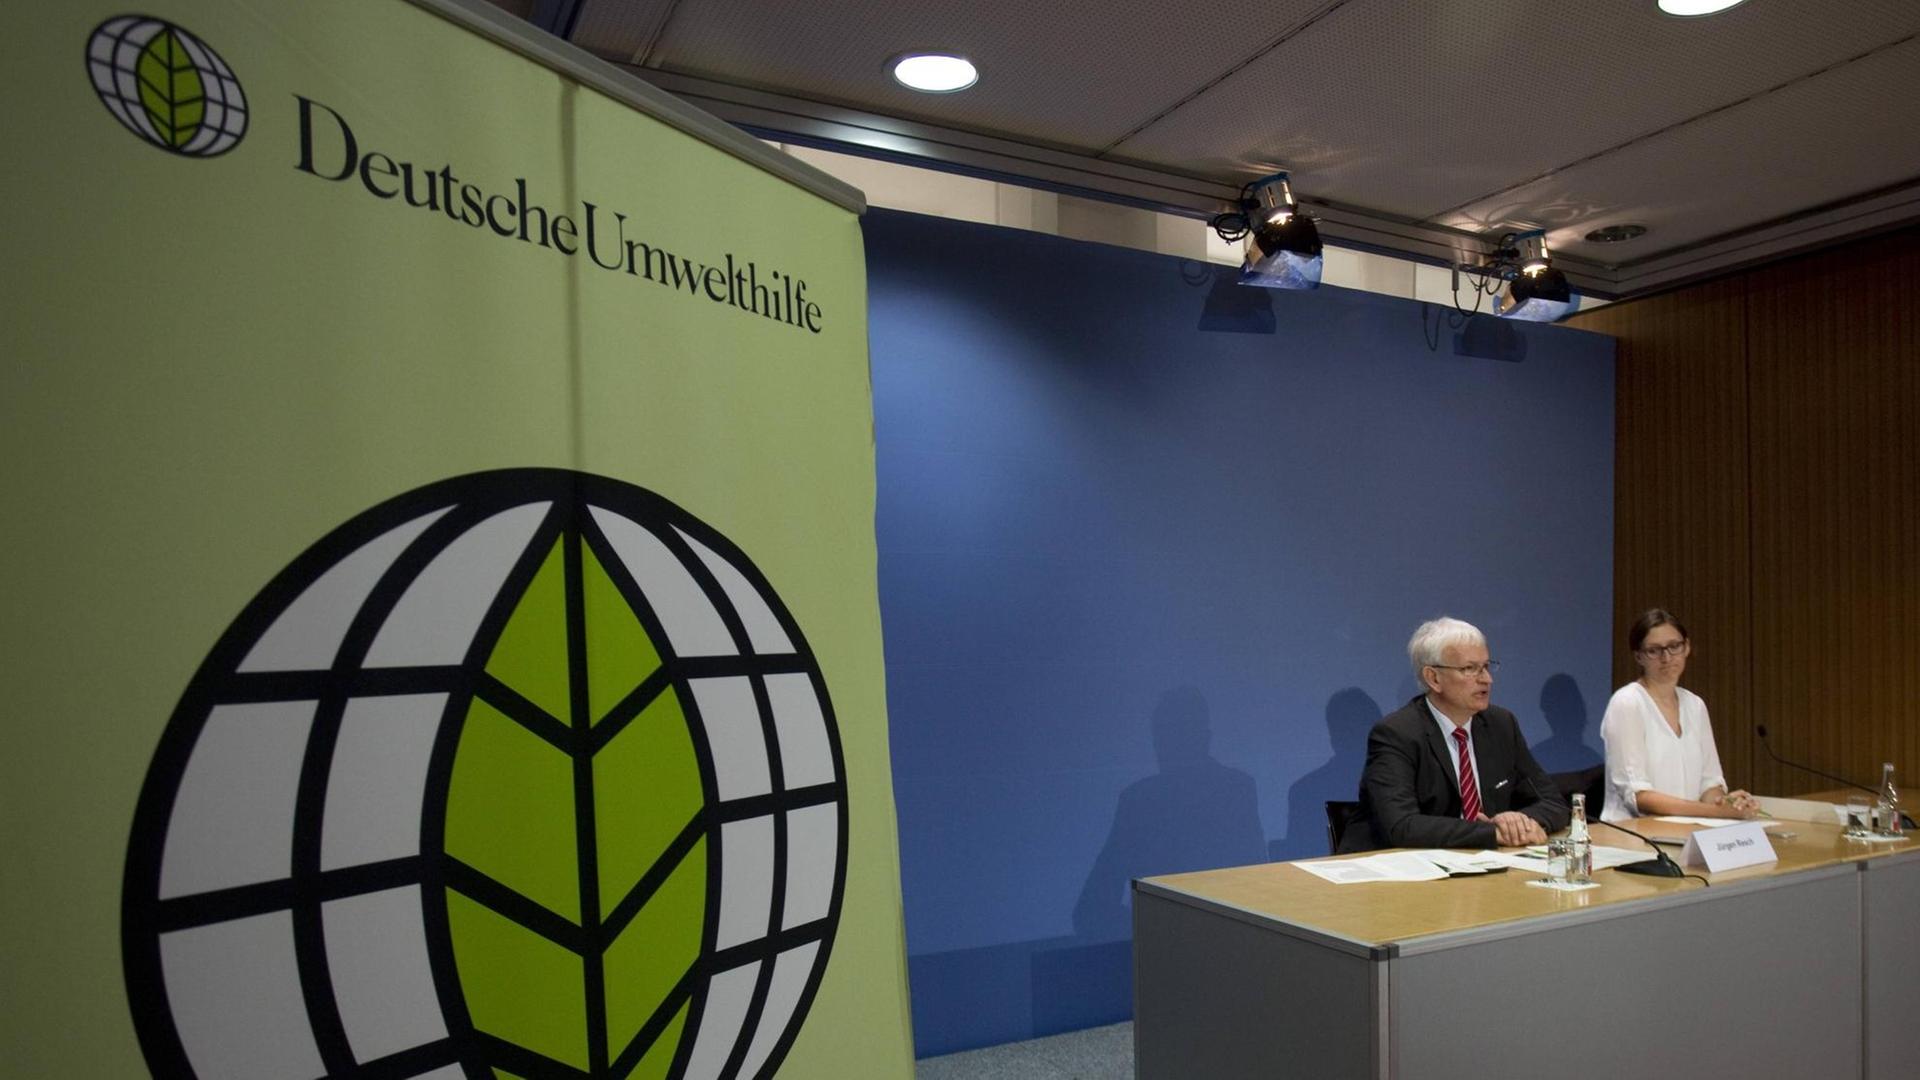 Pressekonferenz der Deutschen Umwelthilfe am 13.05.2016 in Berlin